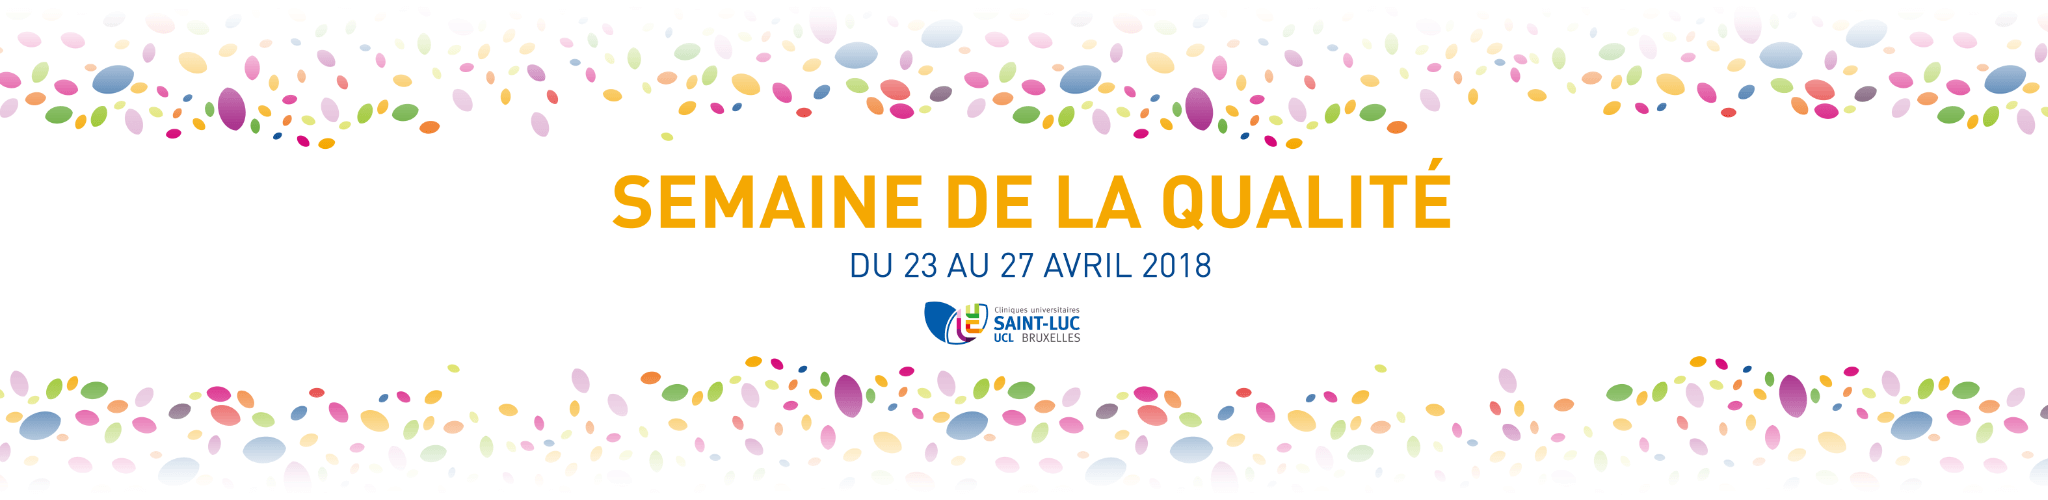 Semaine de la Qualité - Cliniques universitaires Saint-Luc - Bruxelles - lundi 23  › vendredi 27 avril 2018